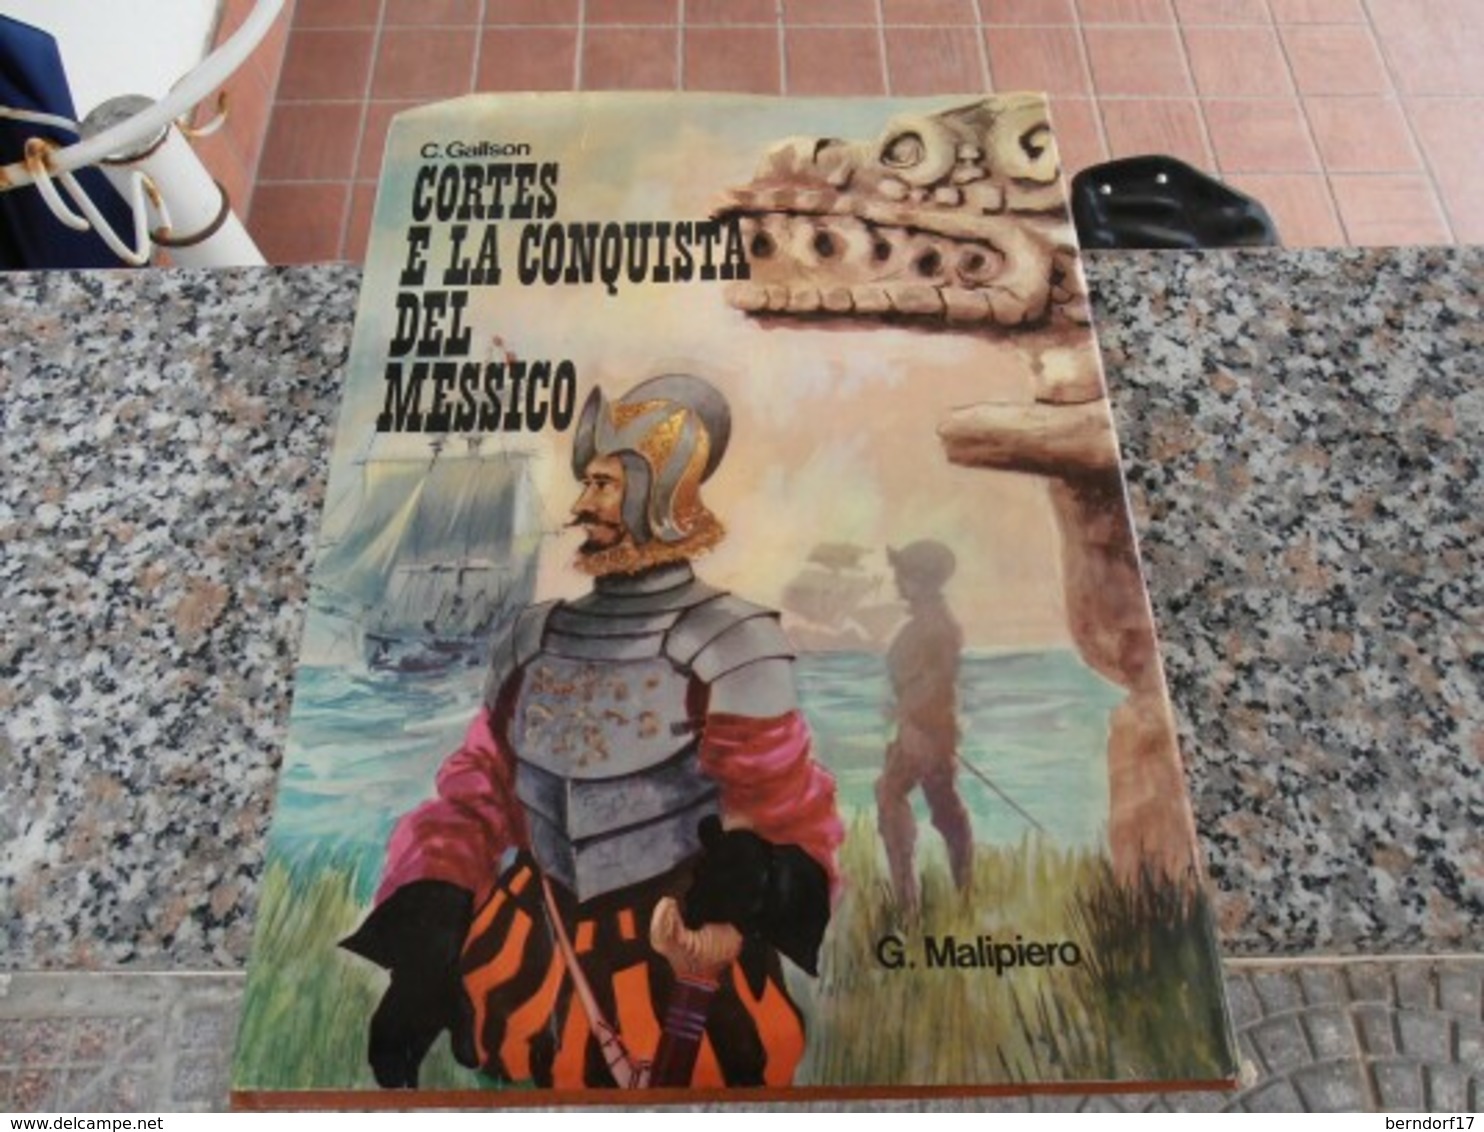 Cortes E La Conquista Del Messico - C. Gallson - Jugend